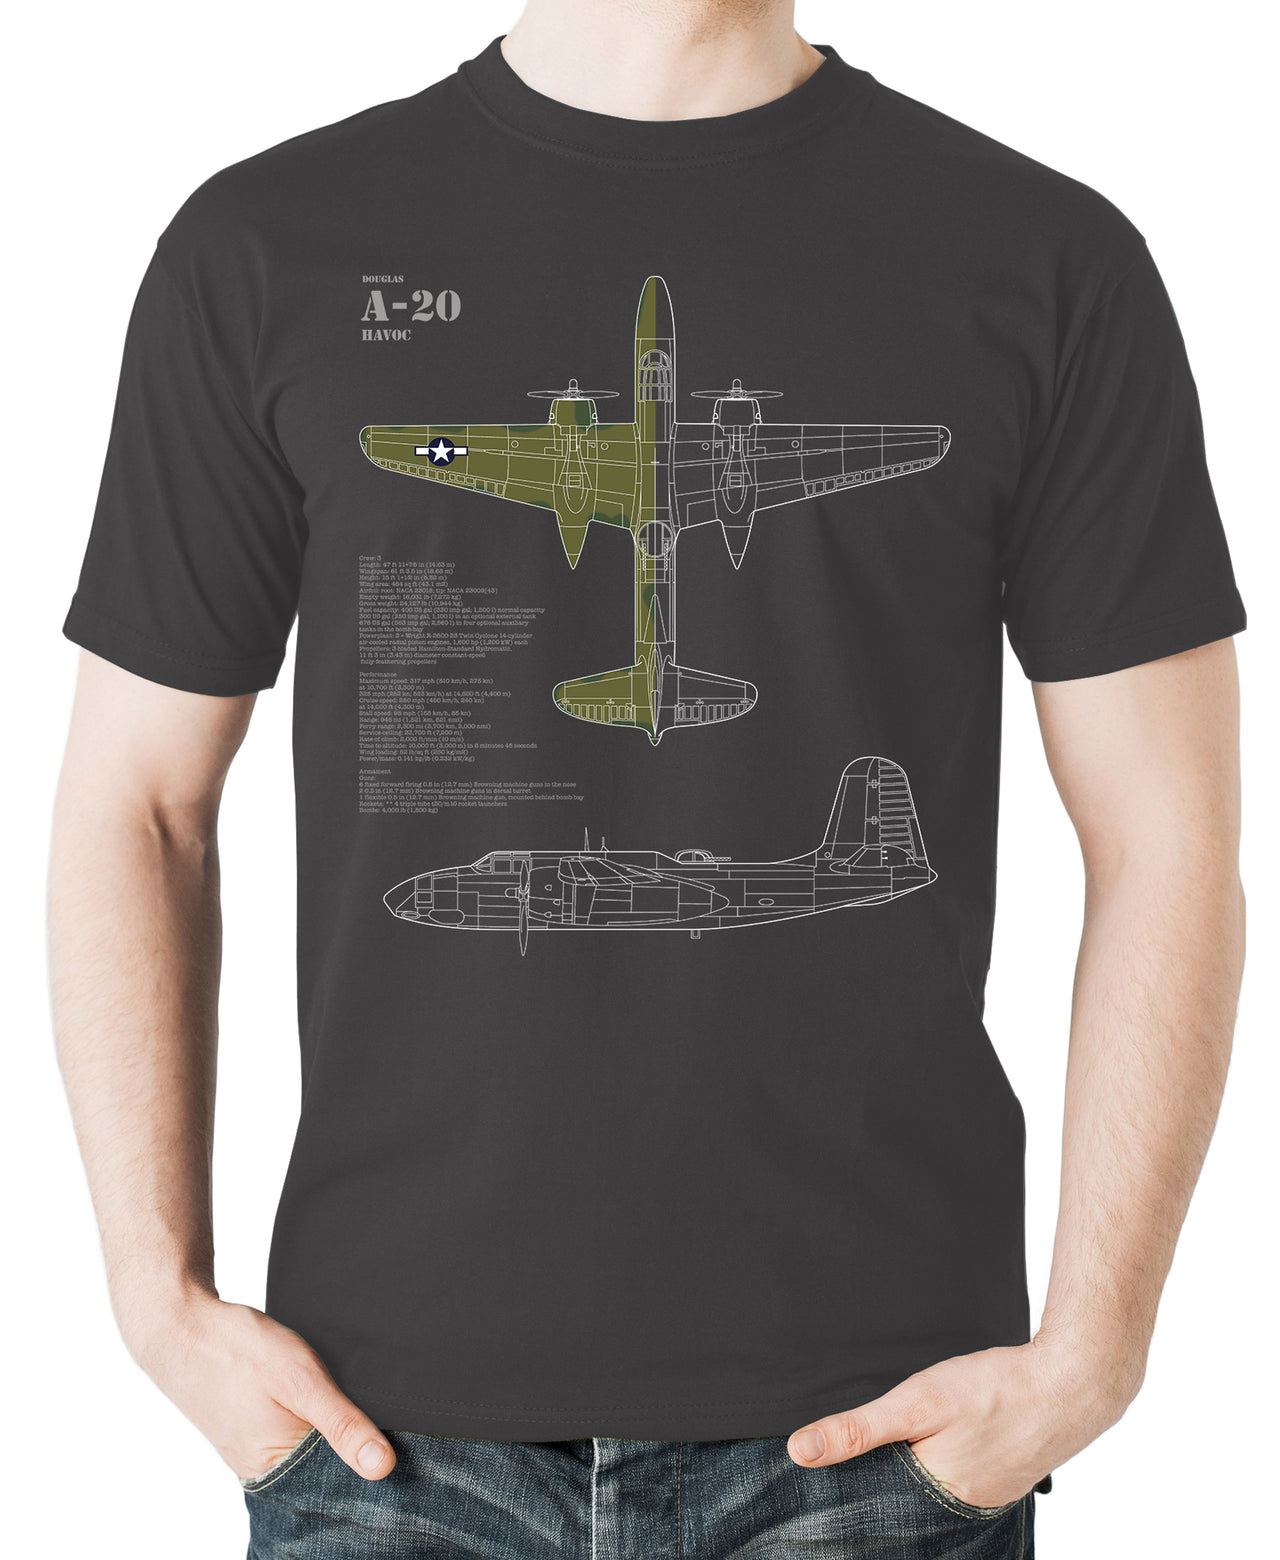 A-20 Havoc -T-shirt